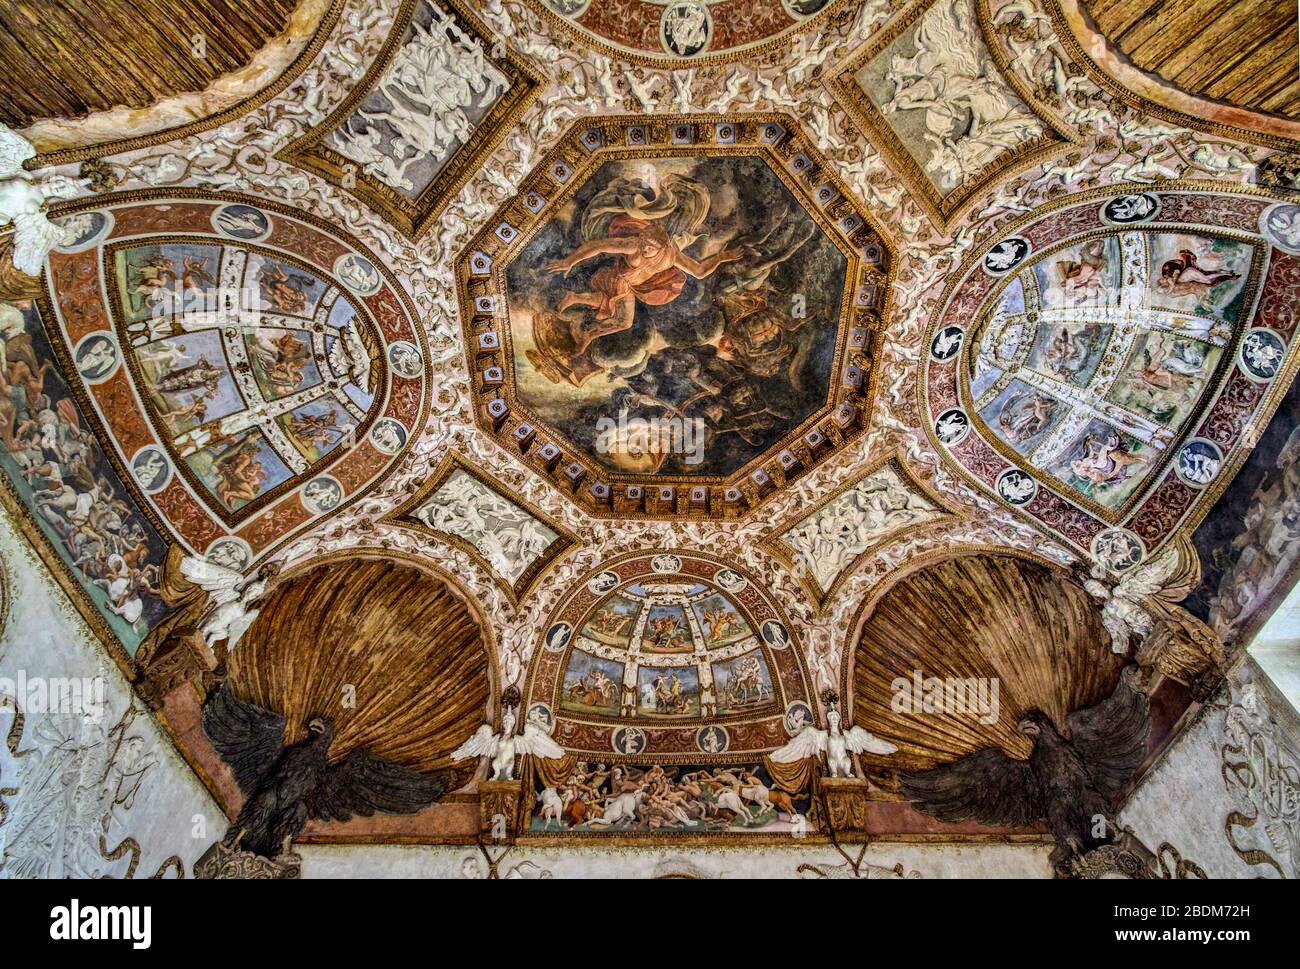 Palazzo Te, Mantua, Italien. Die prächtige Dekoration des Gewölbes der Adler (1527-1528) wechselt Stuckarbeiten und Gemälde ab. Stockfoto